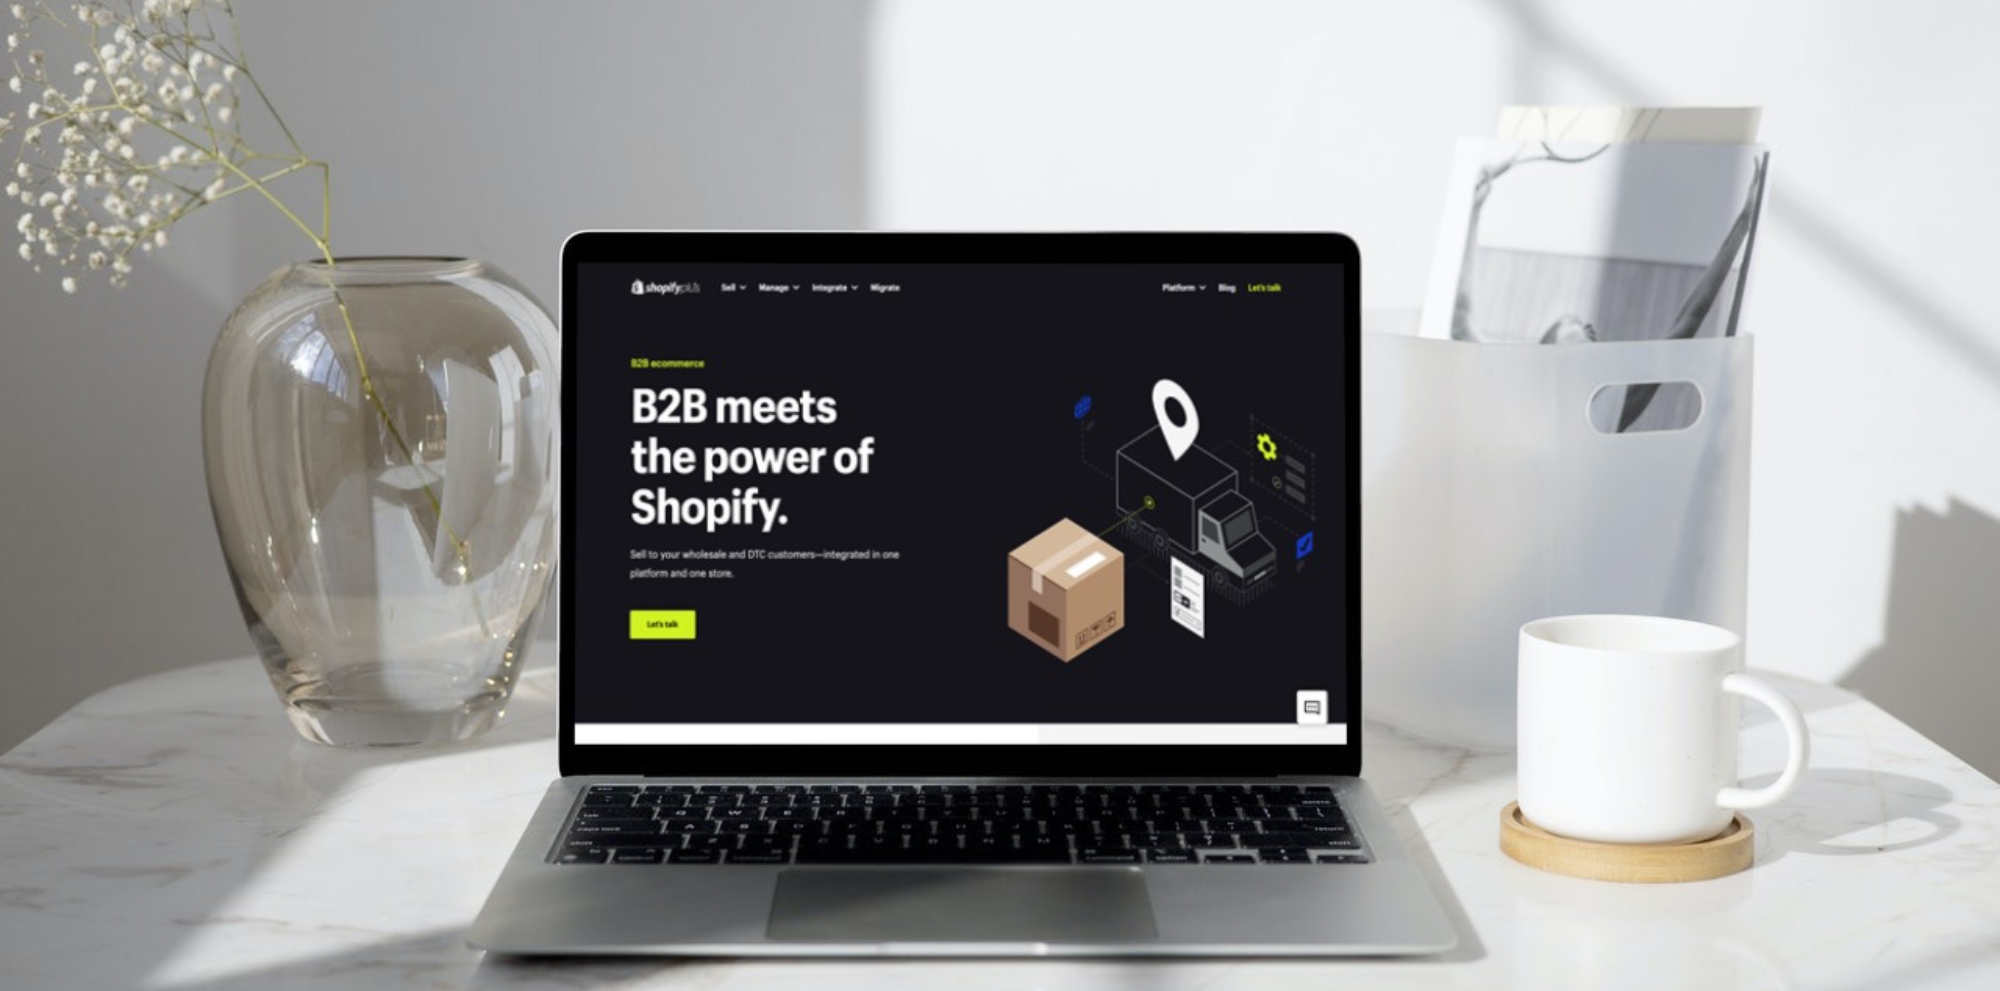 B2B Ecommerce Platform  Shopify Plus for B2B - Shopify USA